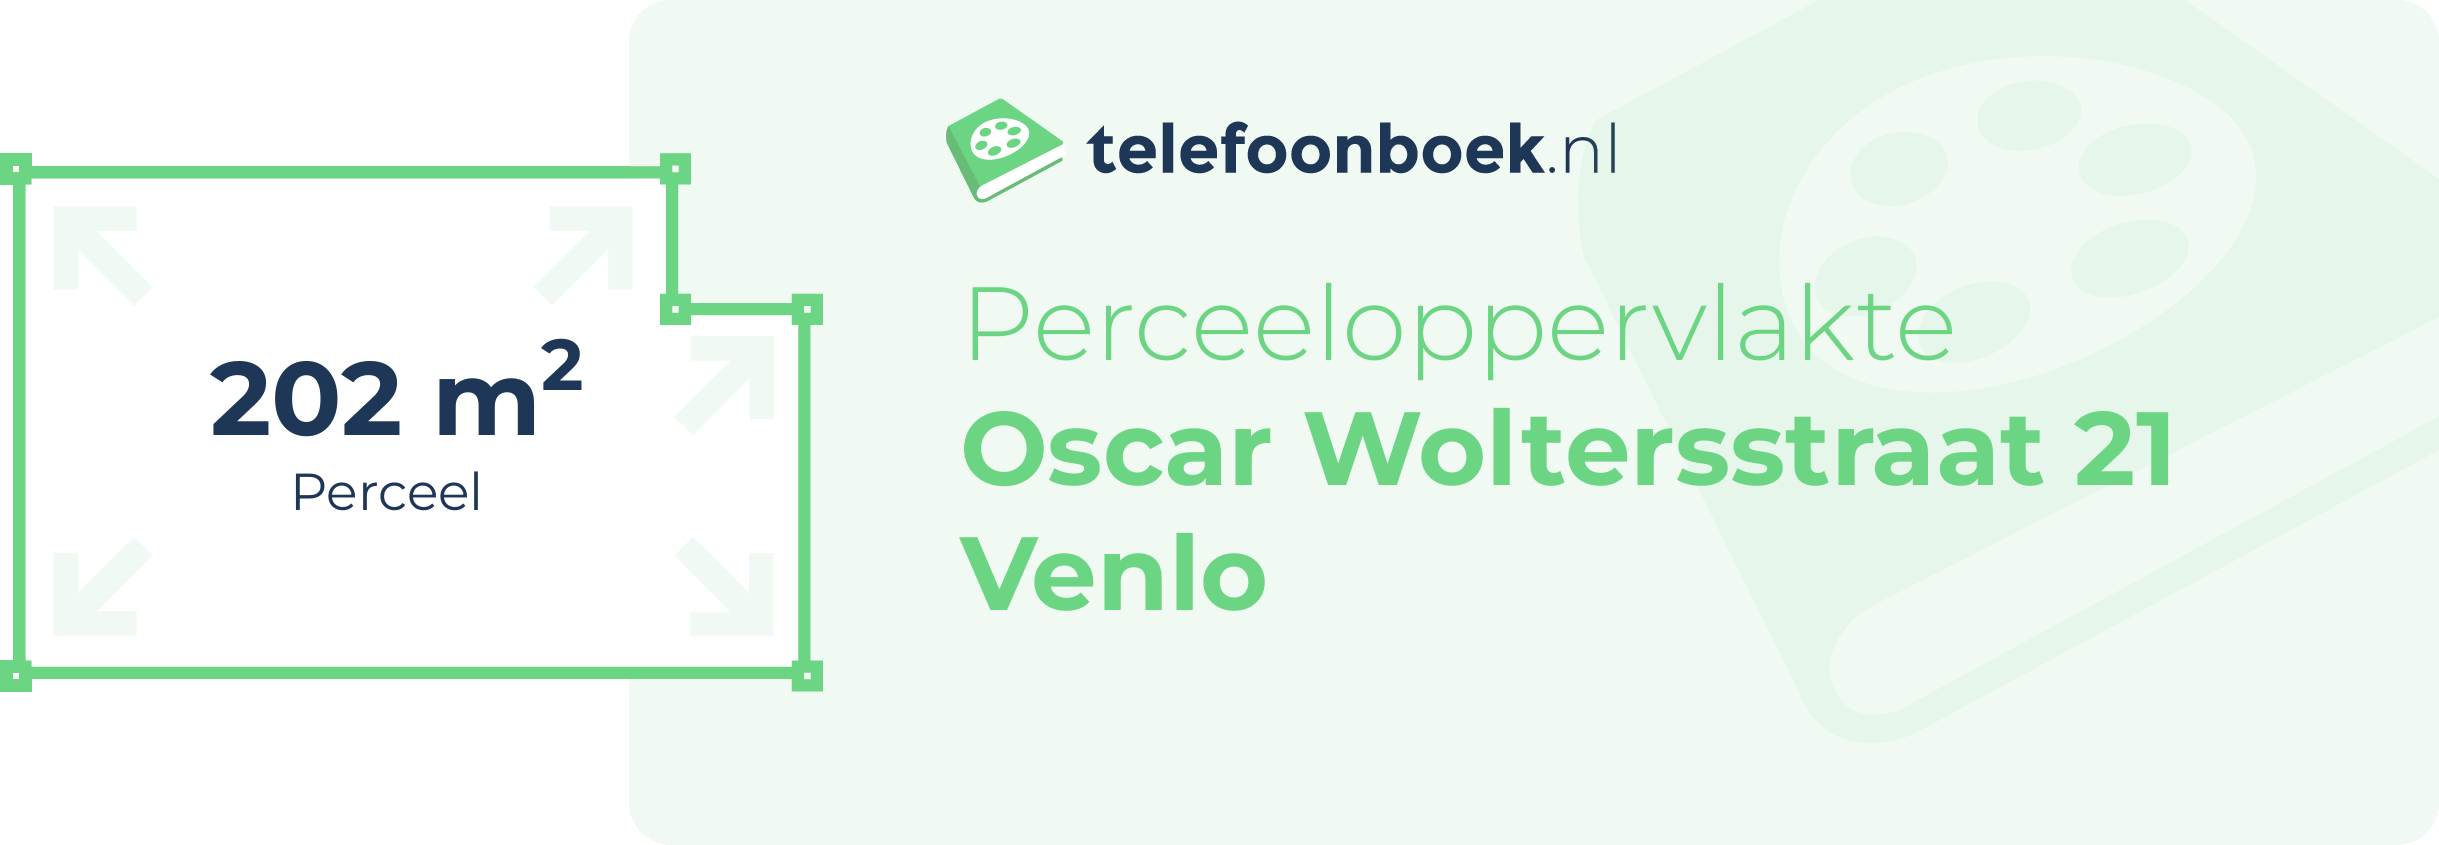 Perceeloppervlakte Oscar Woltersstraat 21 Venlo